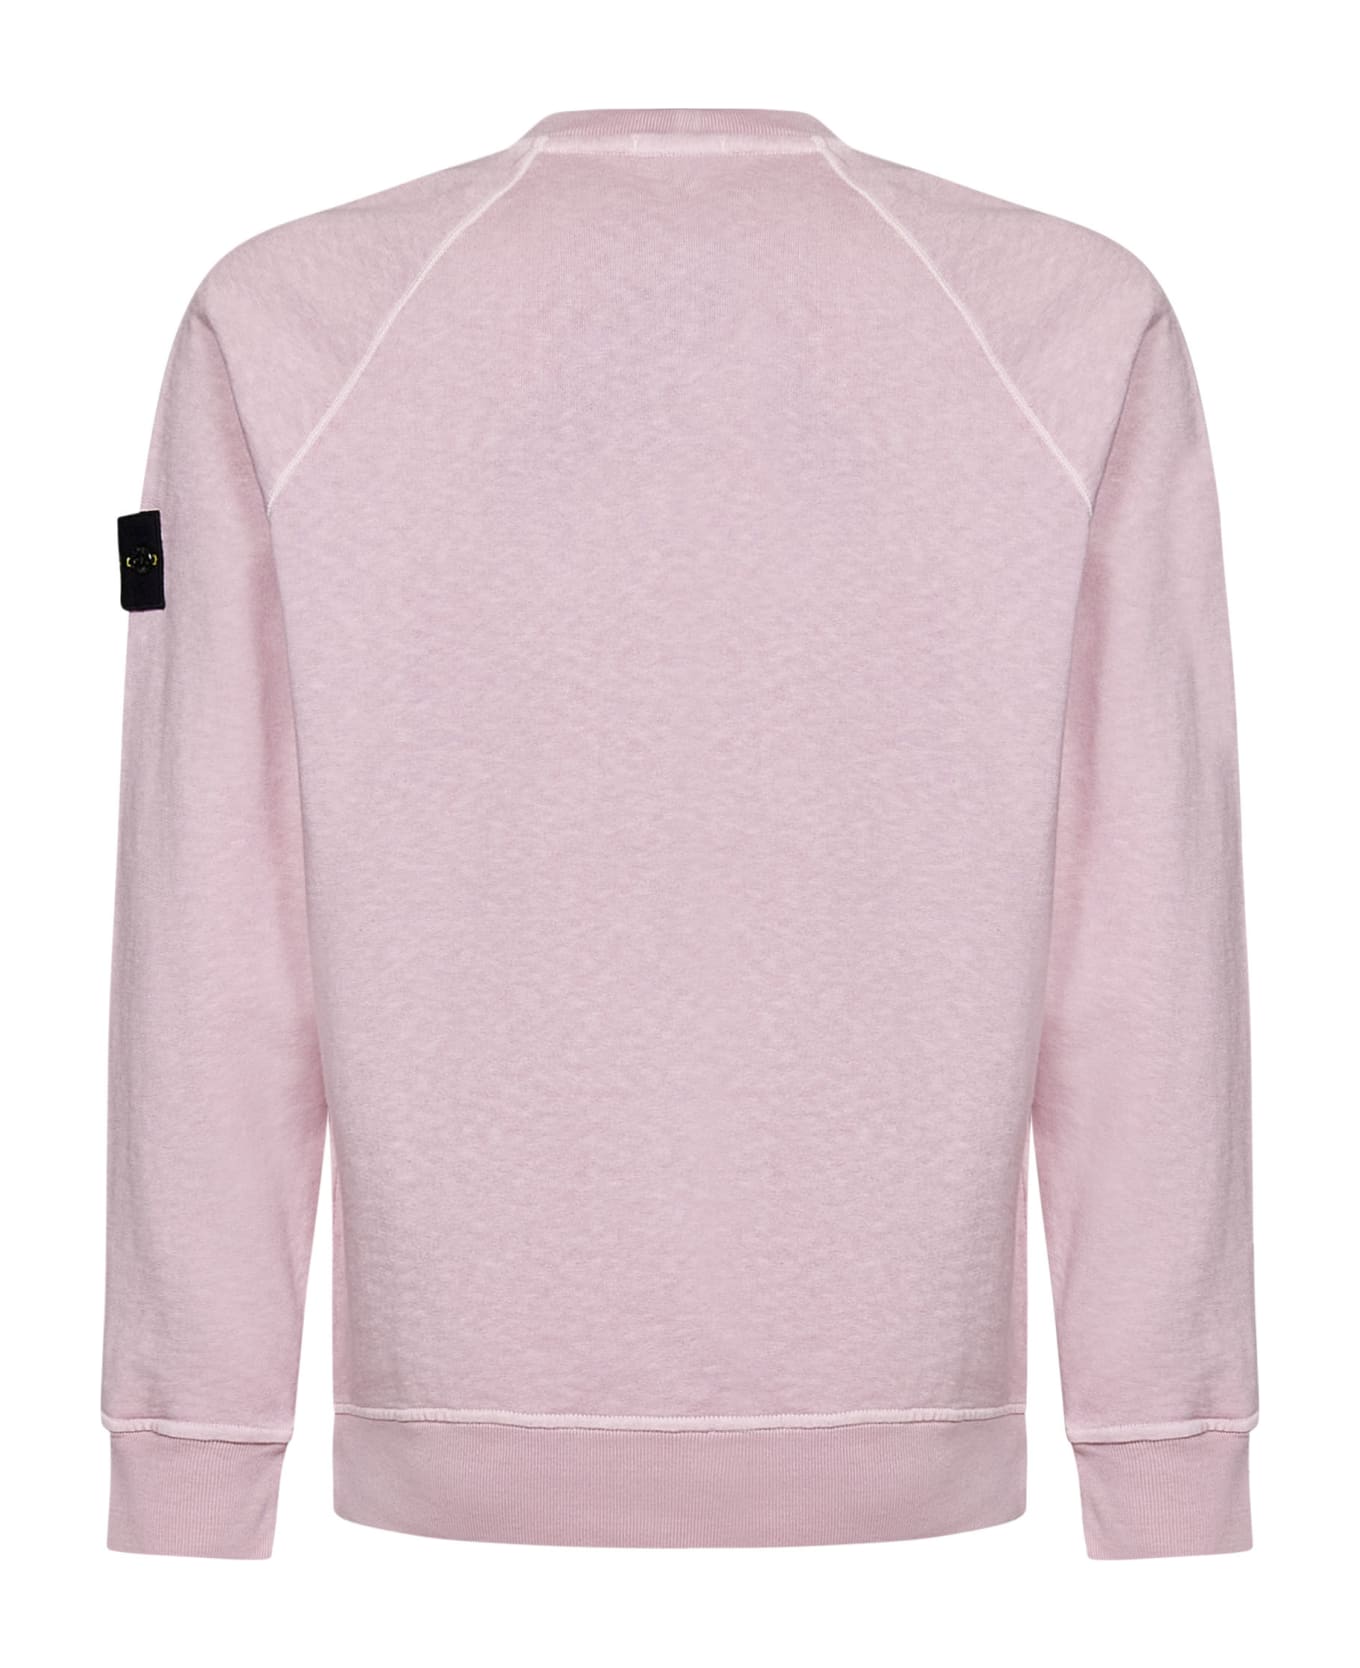 Stone Island Sweatshirt - Pink